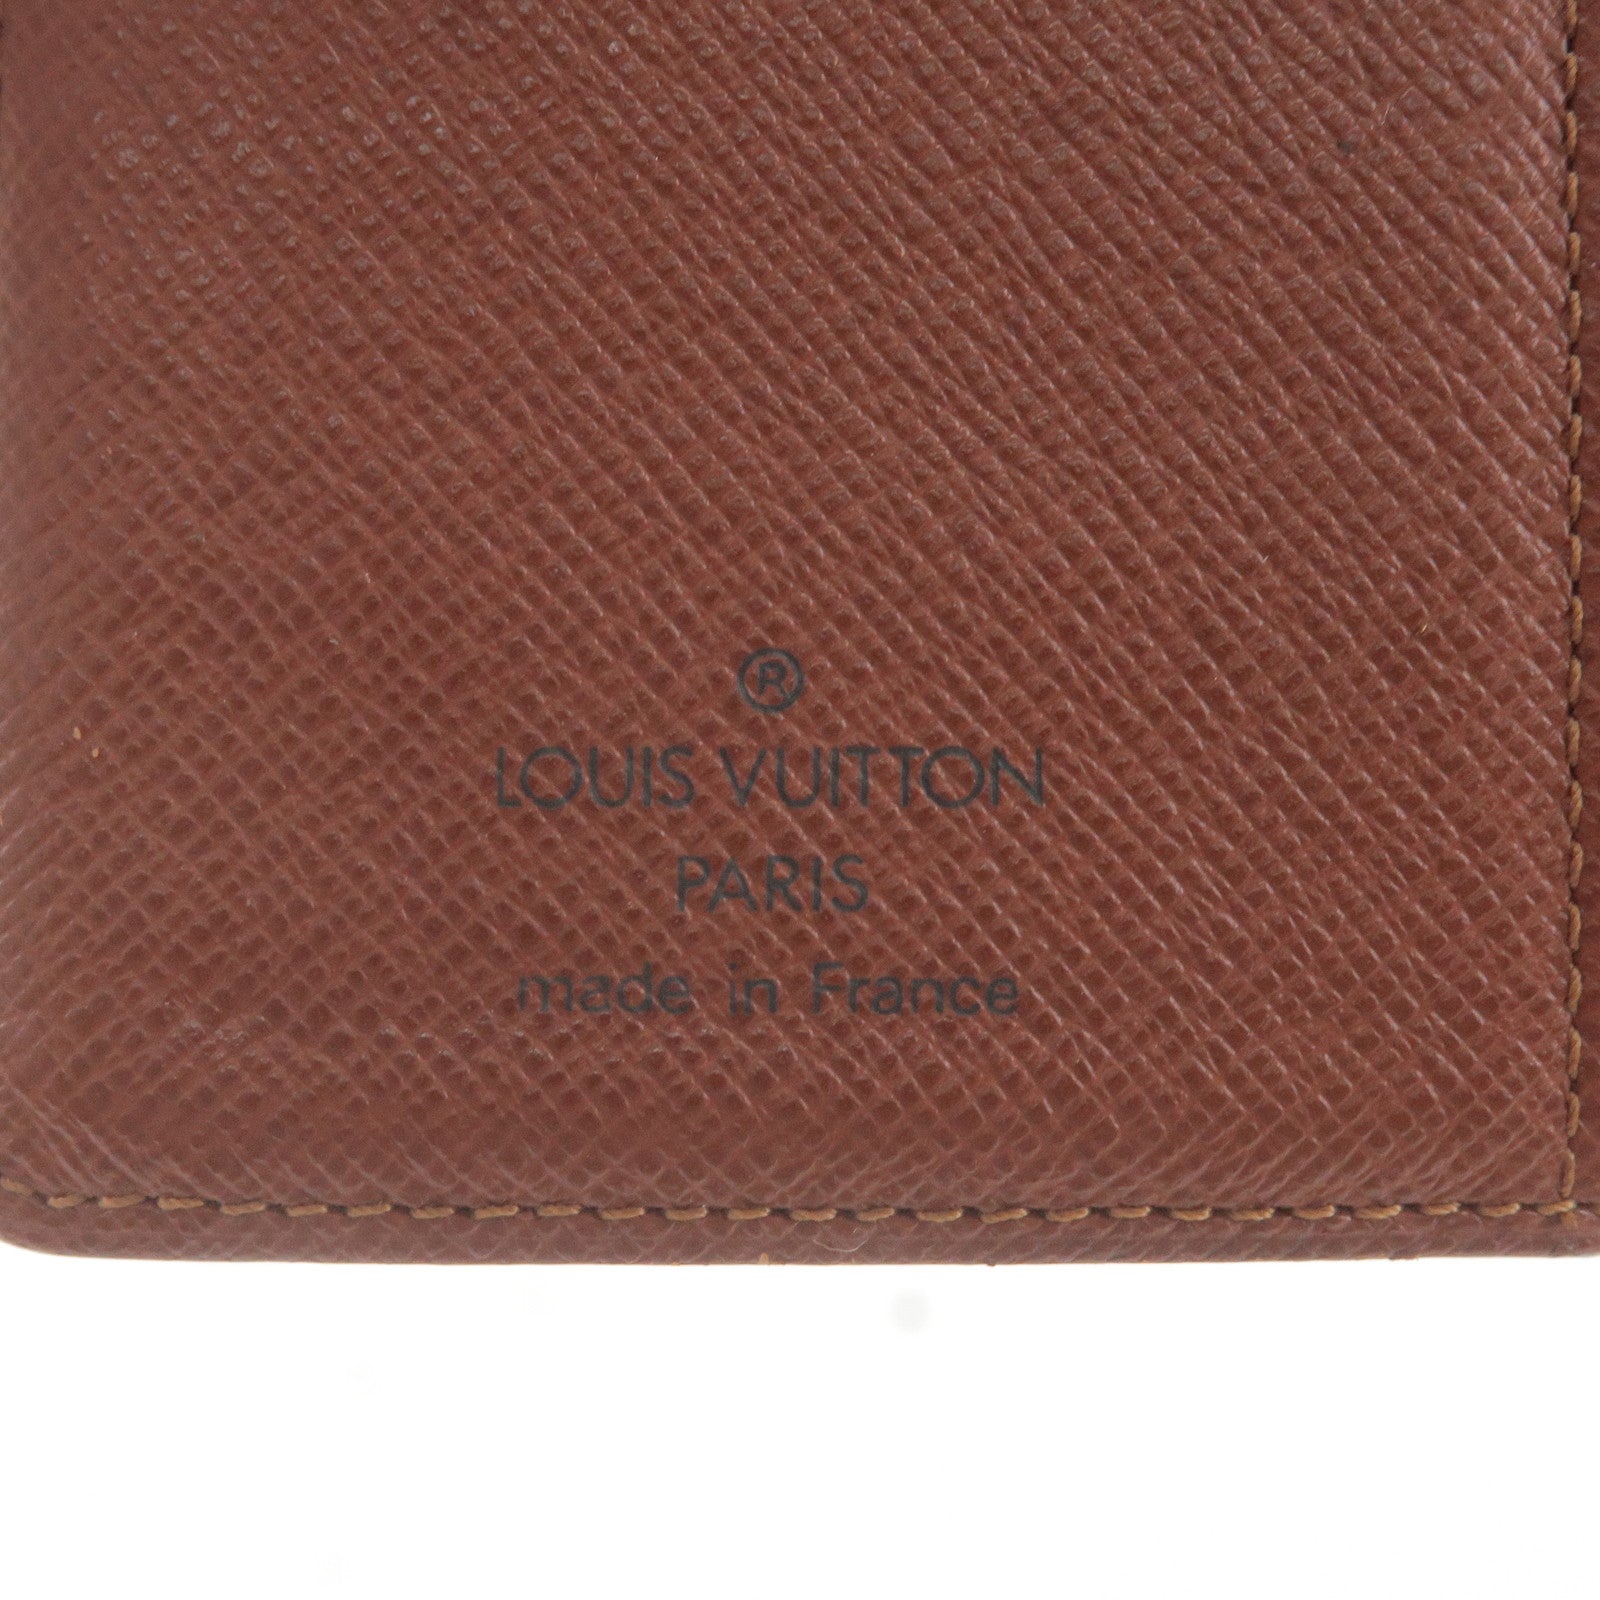 Cover - Planner - Monogram - R20005 – Louis Vuitton Blue Ostrich Mini  Capucines Bag - Louis Vuitton and Grace Coddington s handbag collaboration  - Louis - Vuitton - PM - Agenda